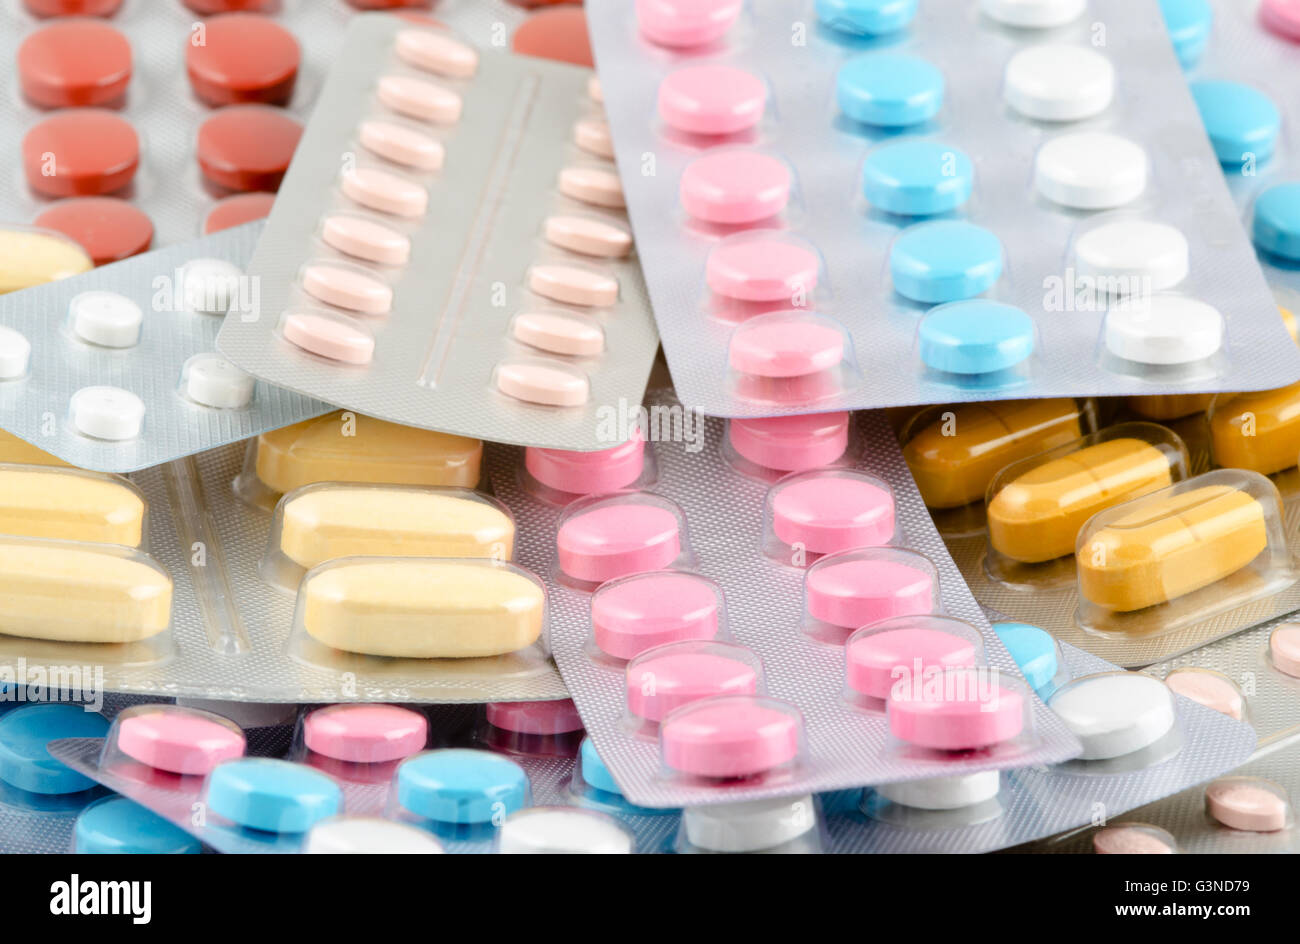 Pilules opioïdes une drogue puissante dépendance Banque D'Images